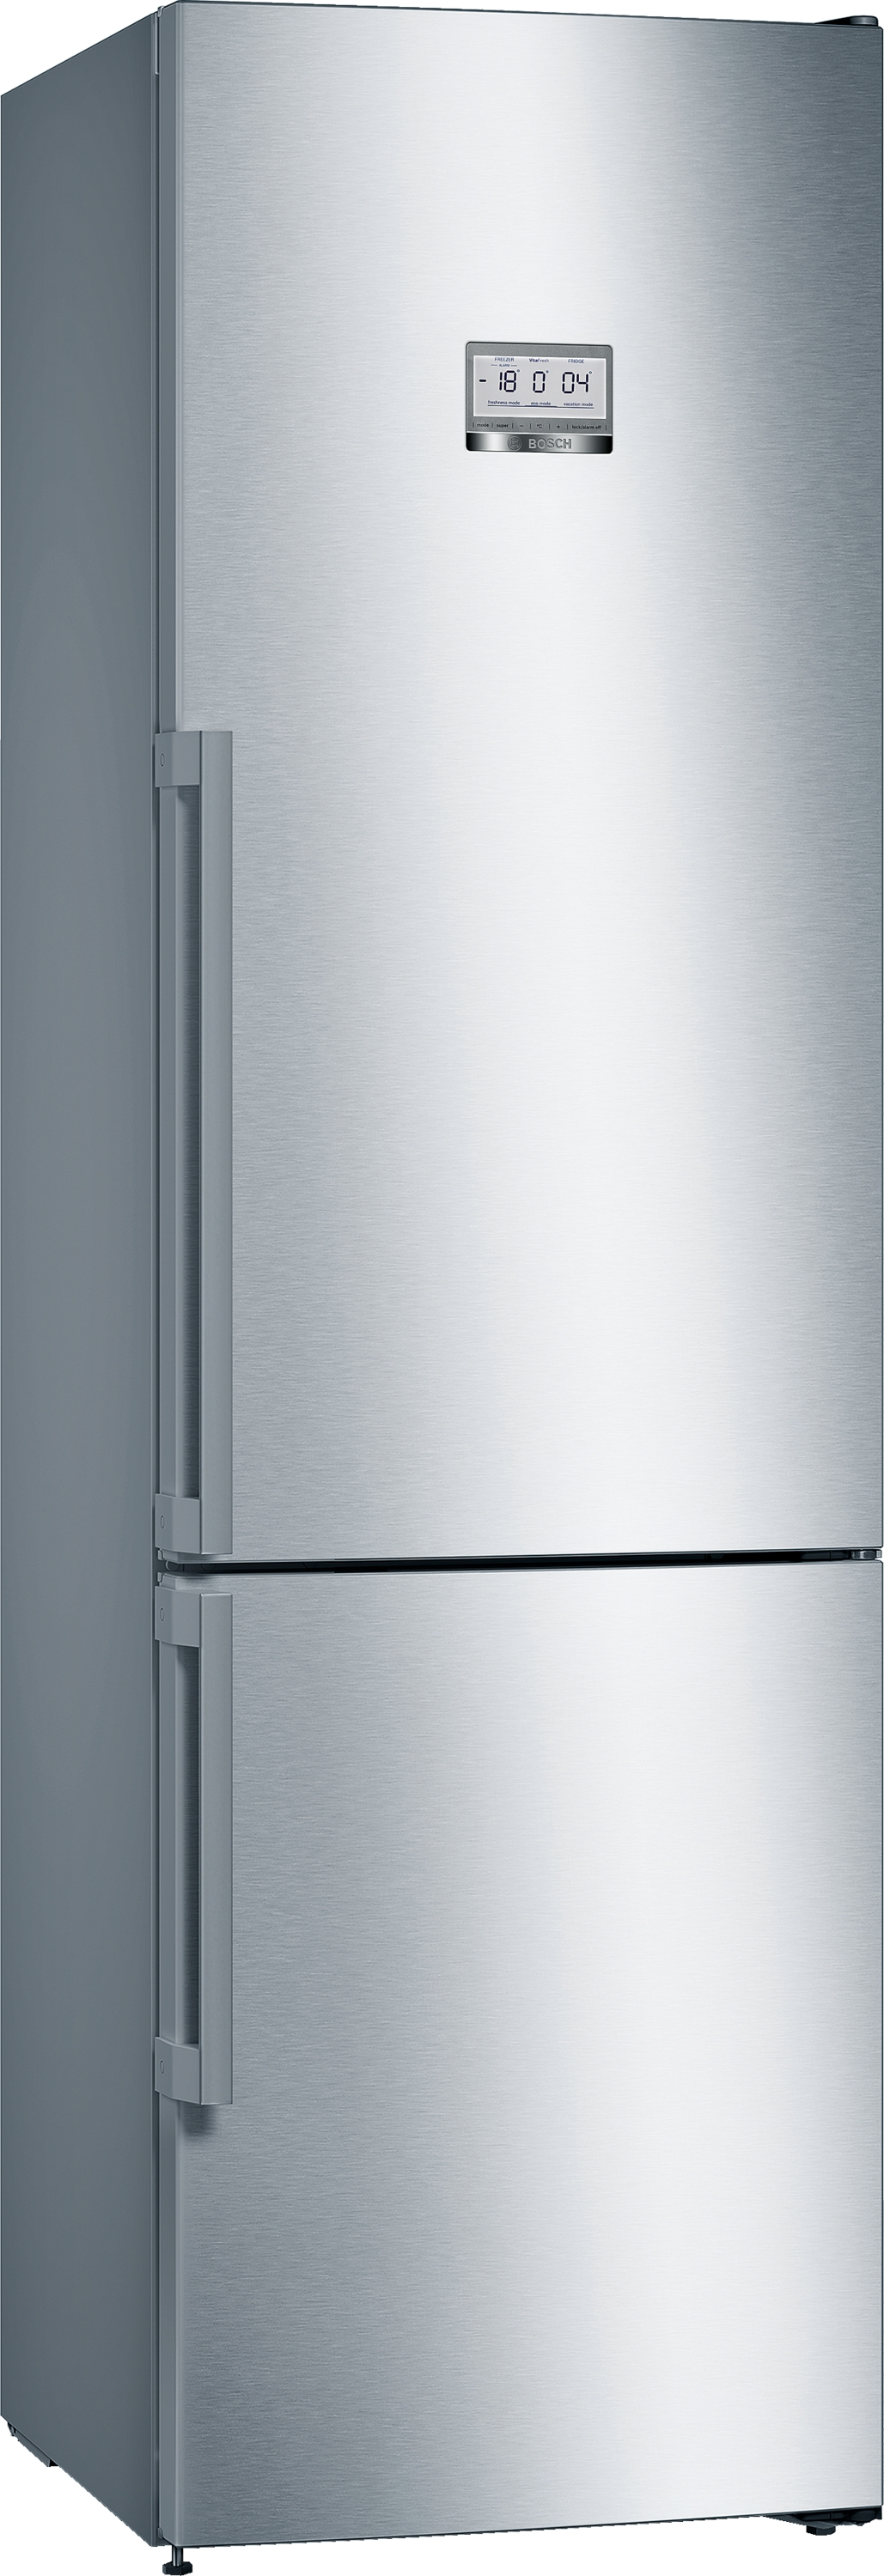 KGF39PIDP, Samostojeći frižider sa zamrzivačem dole